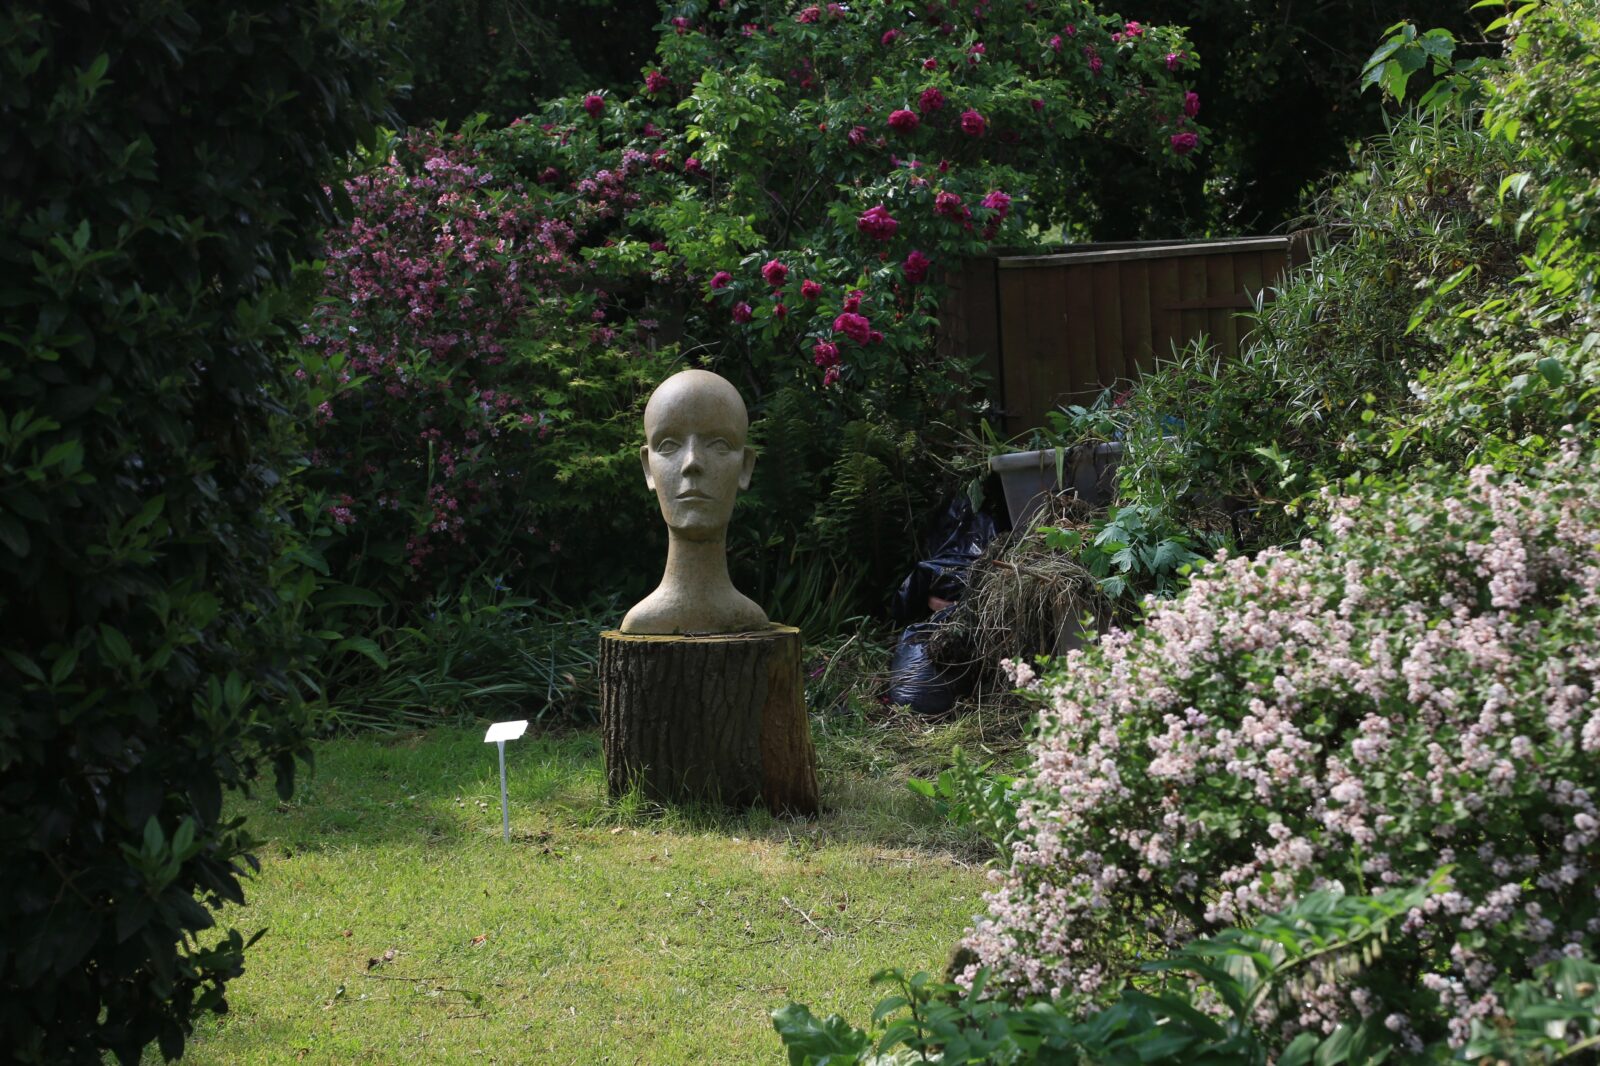 sculpture garden in the open studio OAW 2018 near oxford